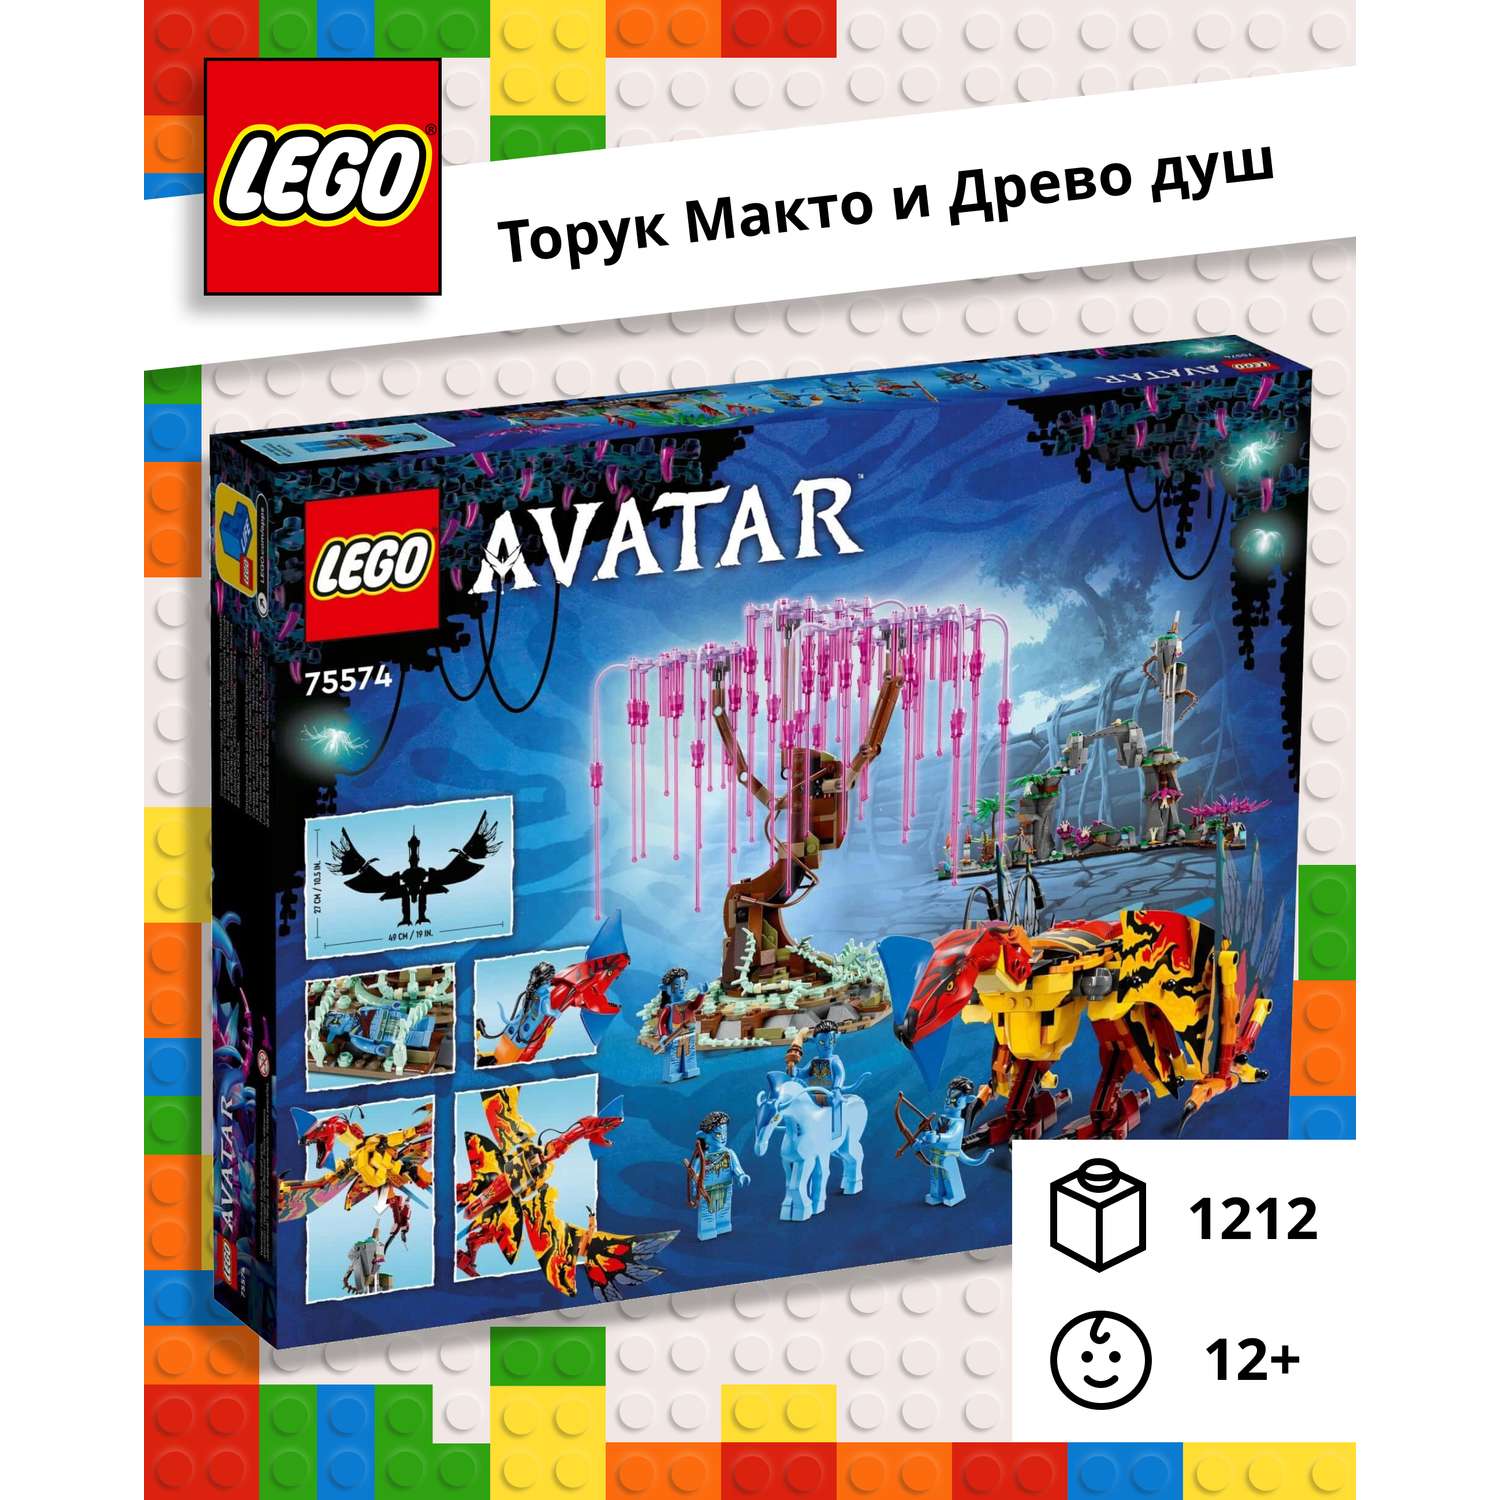 Конструктор LEGO Avatar «Торук Макто и Древо душ» 1212 деталей 75574 - фото 1